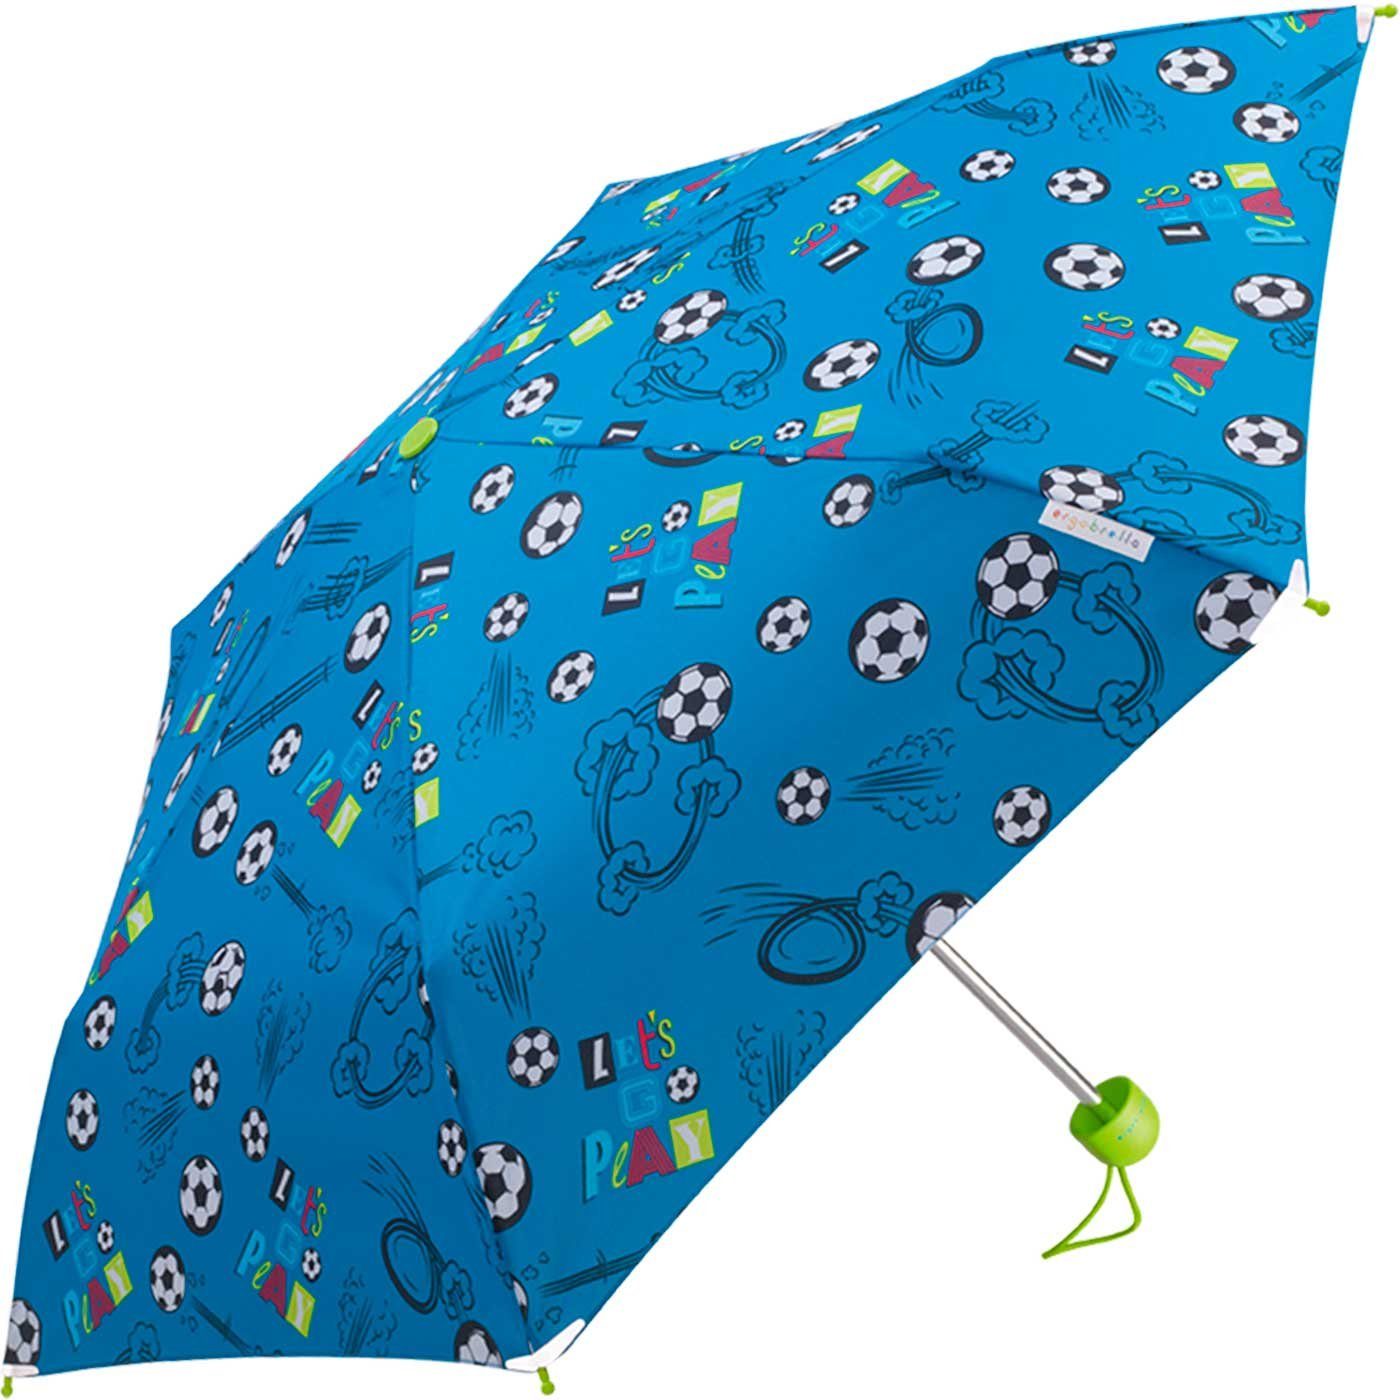 Basic HAPPY bedruckt, Mini RAIN Kinderschirm farbenfroh fantasievoll reflektierend und Taschenregenschirm